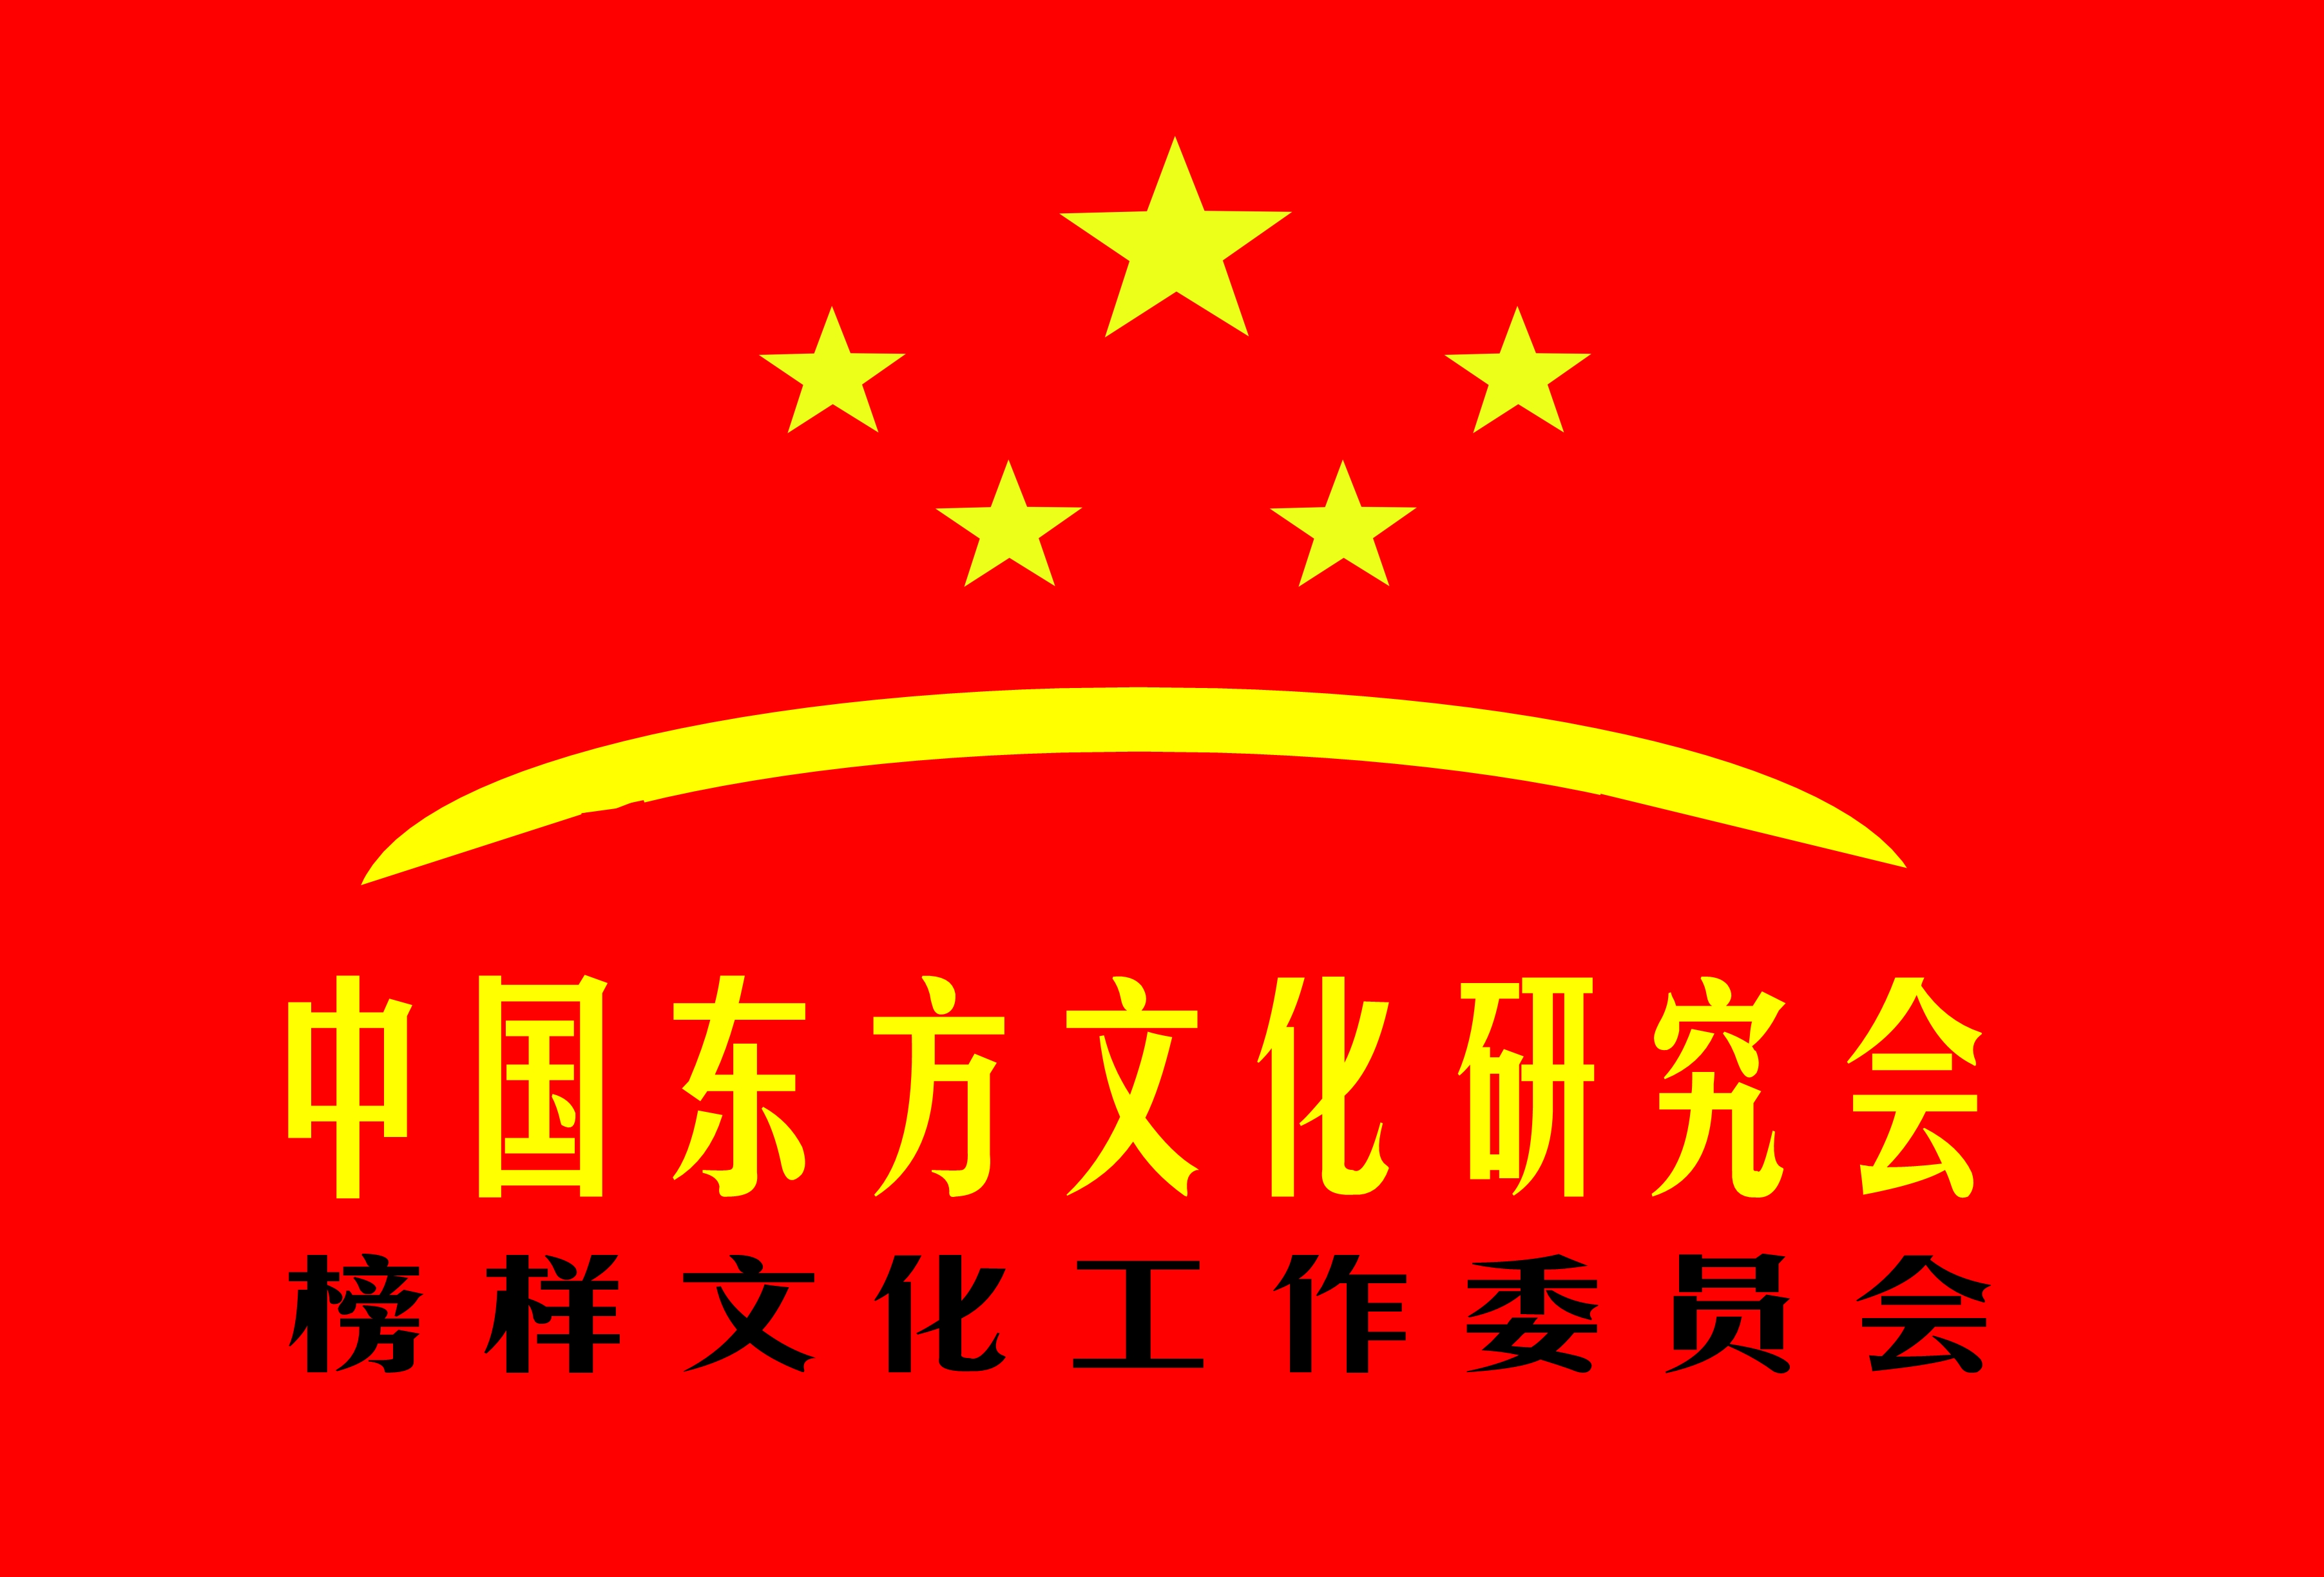 中国税务学会副会长张连起委员聚焦中华优秀传统文化